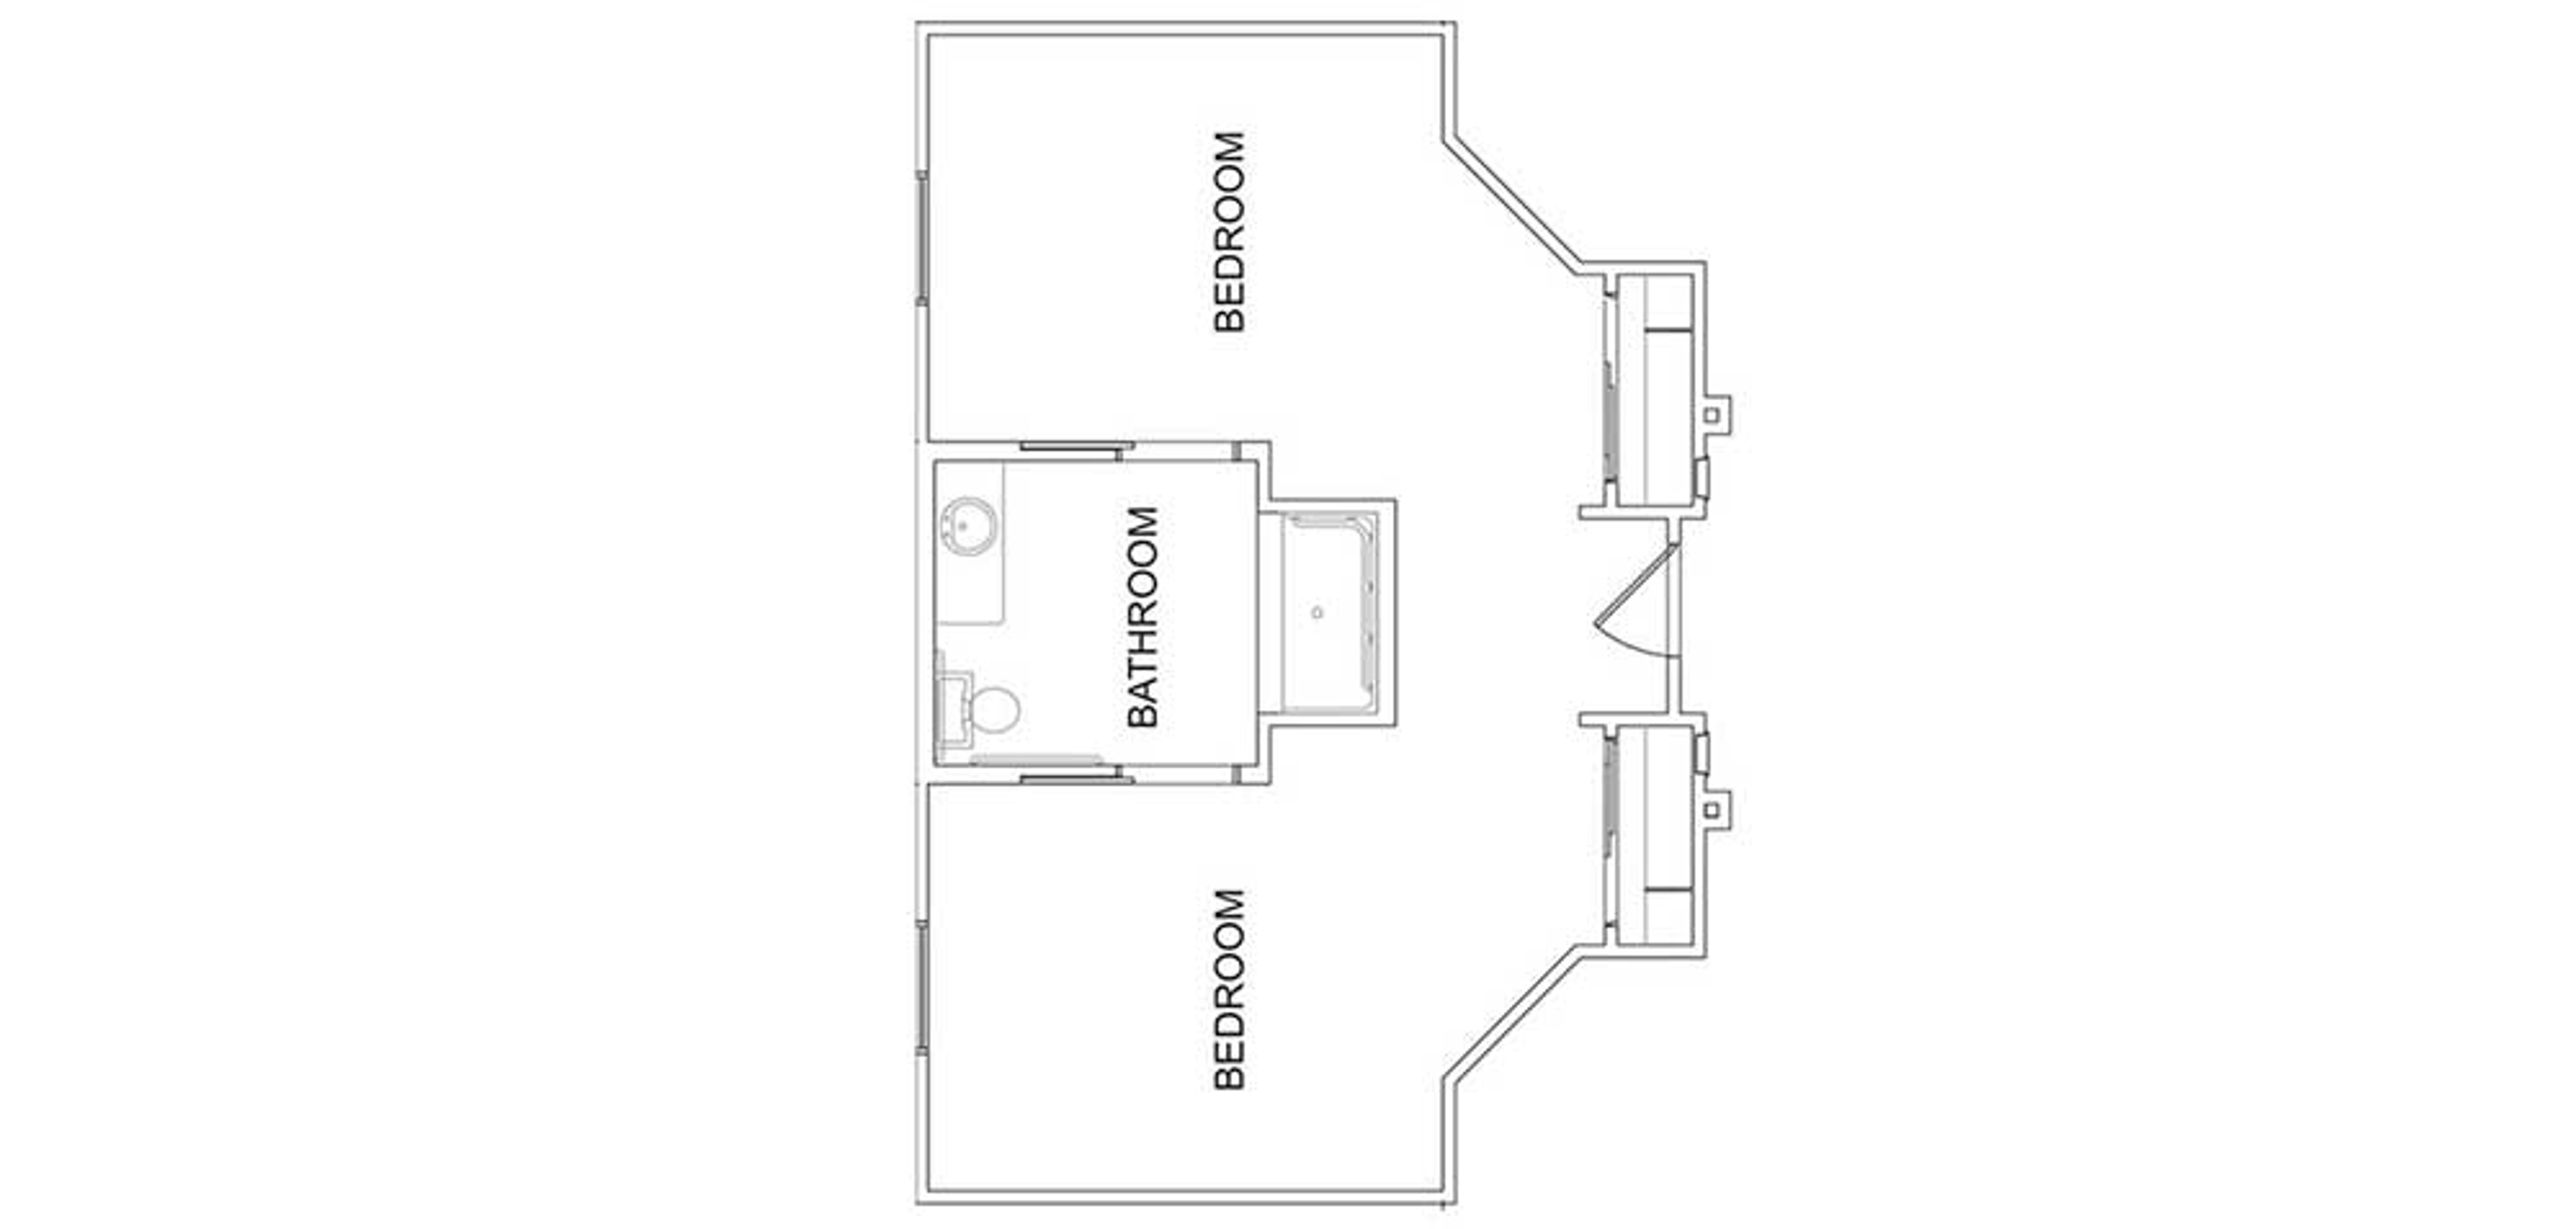 Floorplan - Martin Crest - 2B 1B Semi-private